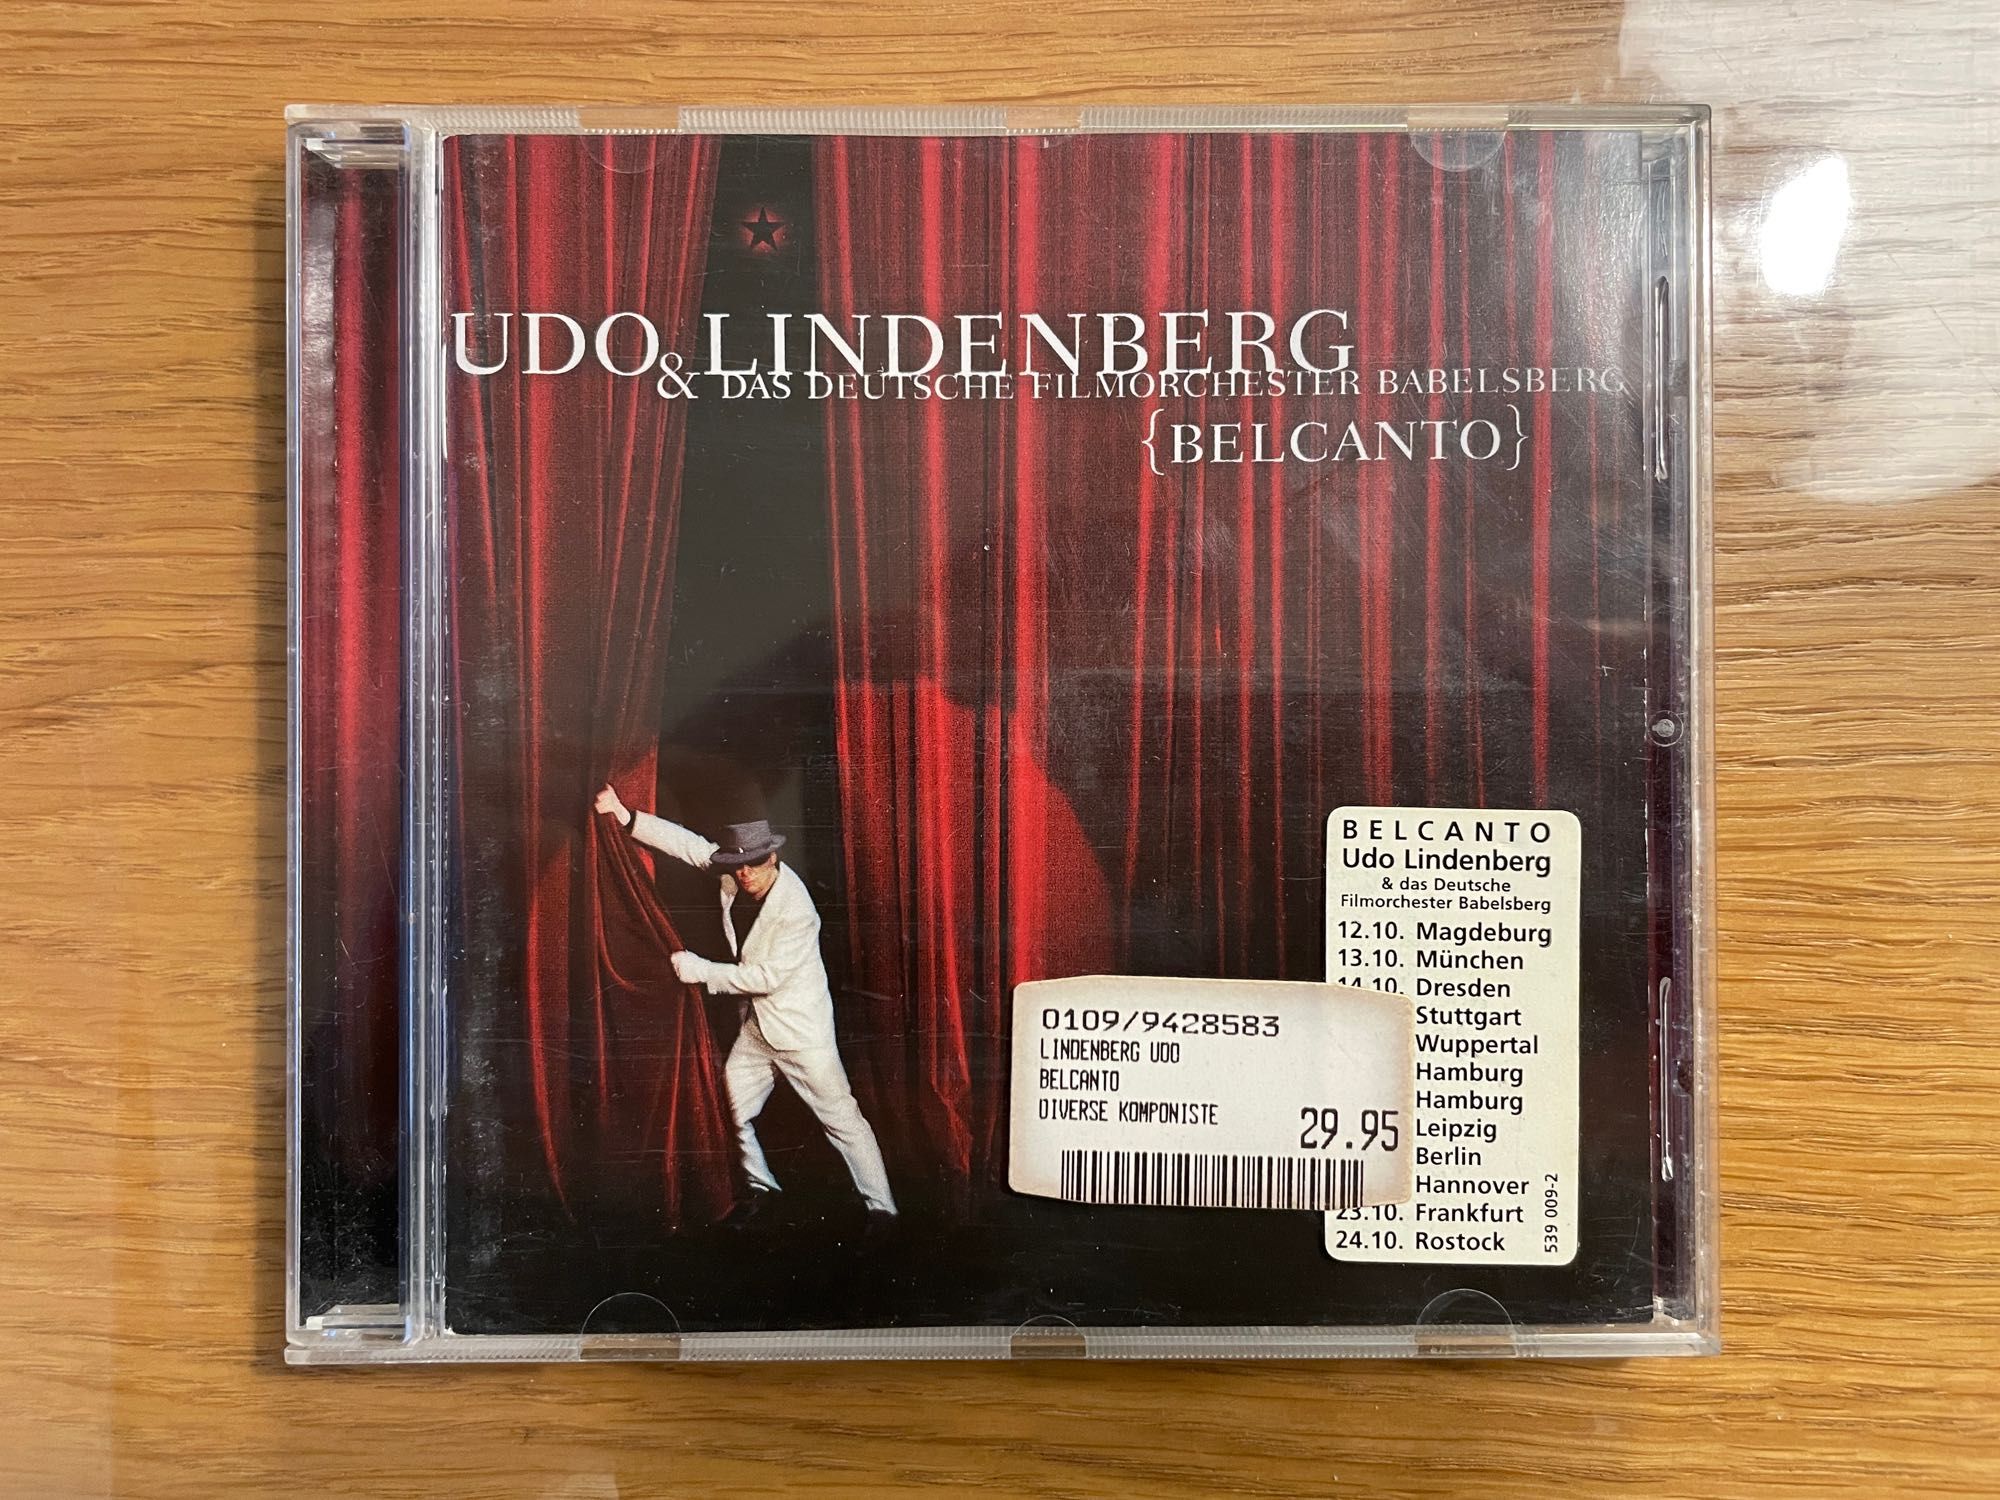 Udo Lindberg & Das Deutsche Filmorchester Babelsberg Belcanto 1997